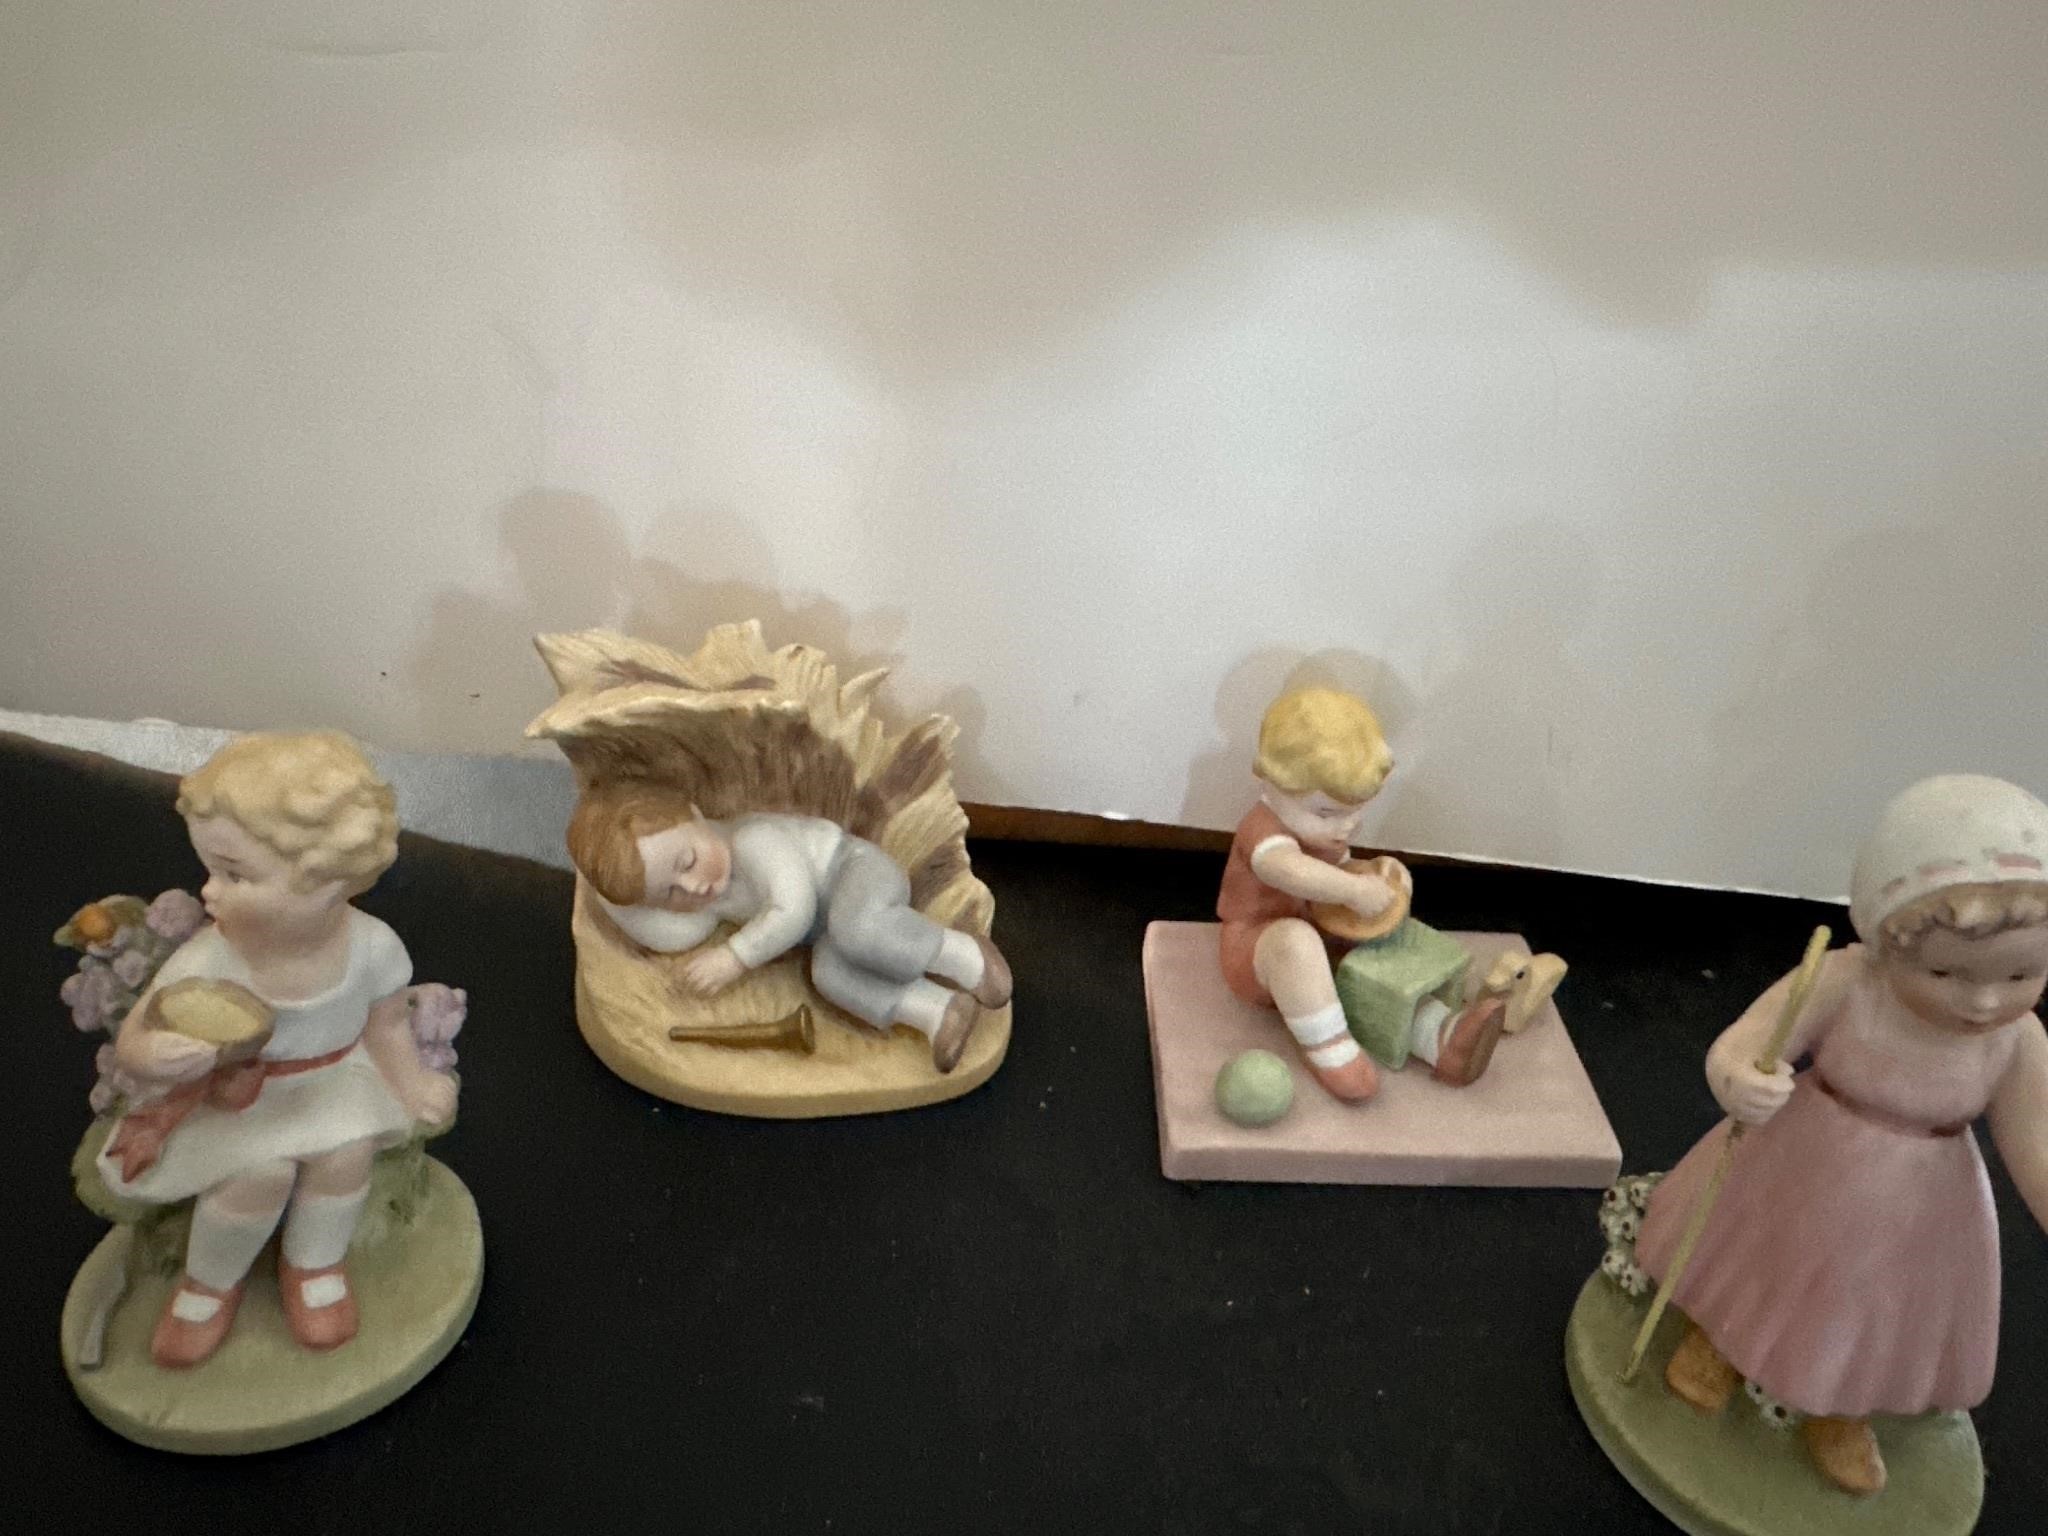 Nursery Rhyme Figurines